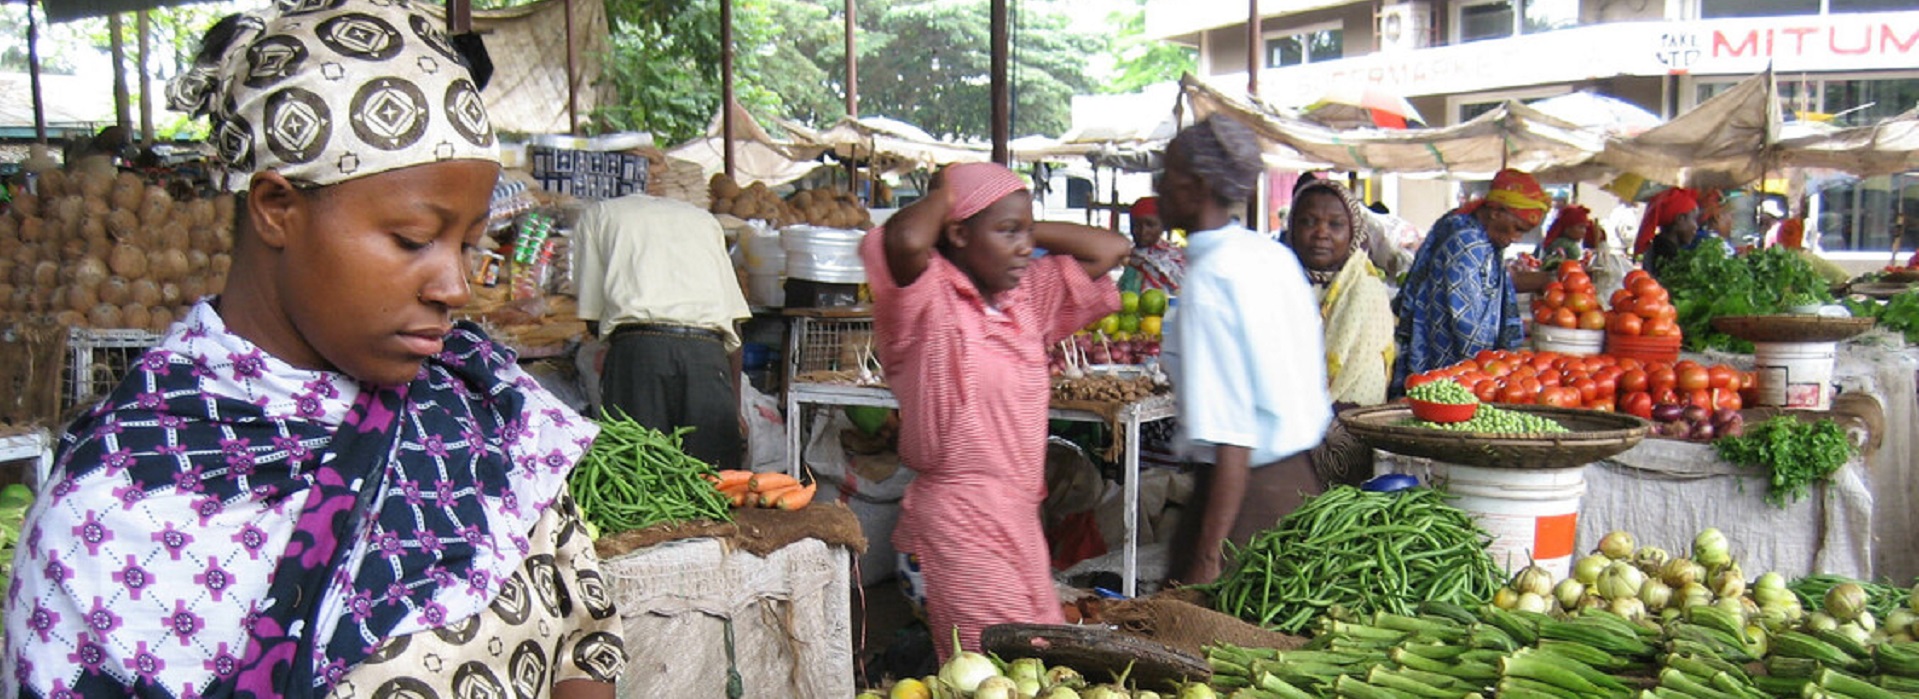 Frau inmitten bunter Feldfrüchte auf einem Markt in Malaysia 